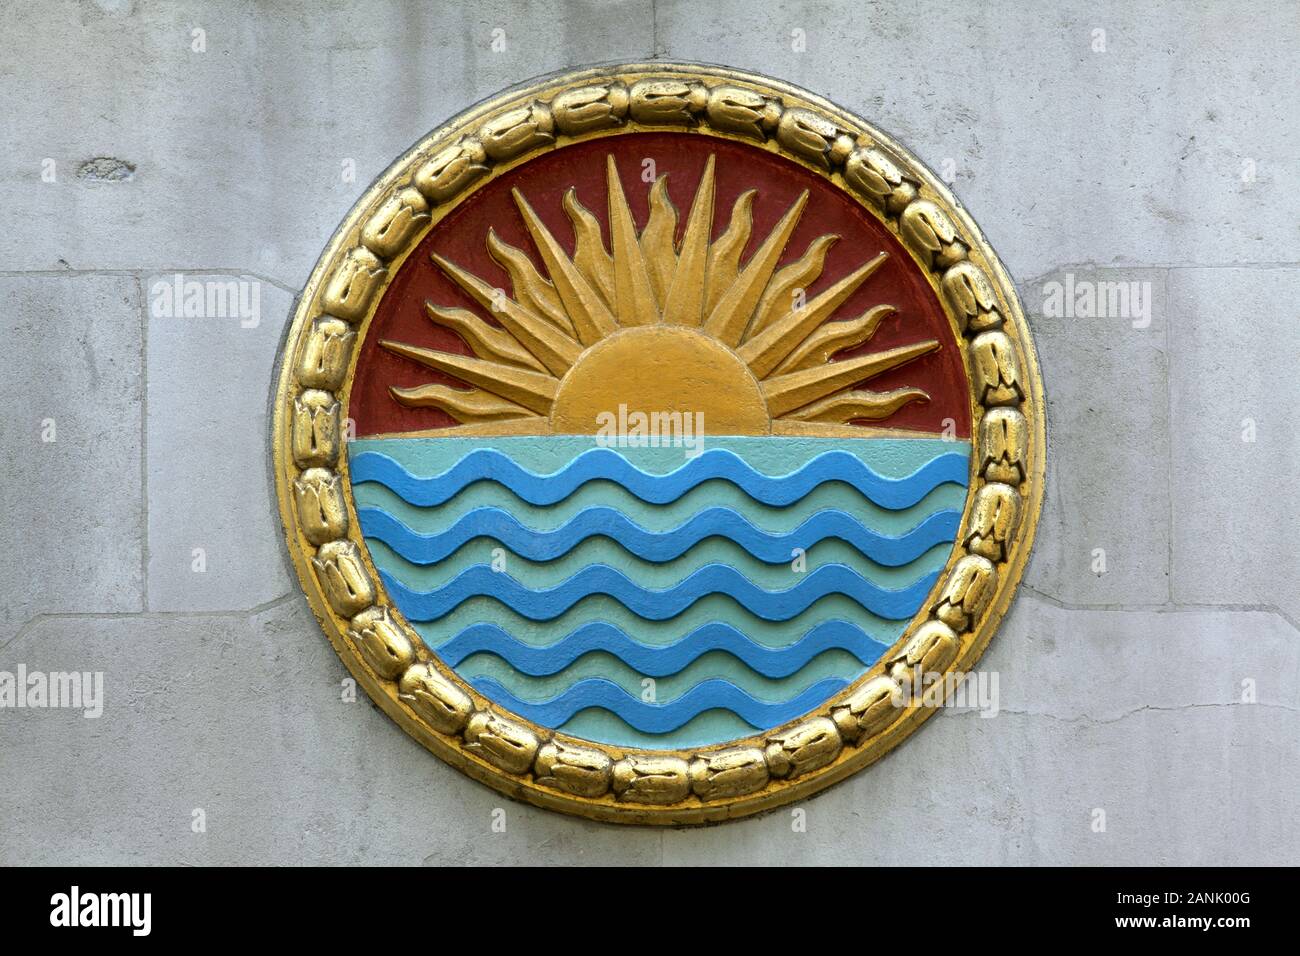 L'un des nombreux panneaux ronds sur le côté de l'Inde Maison, Aldwych, London. Celui-ci dispose d'un lever de soleil (ou paramètre ?) au-dessus de l'eau. Banque D'Images